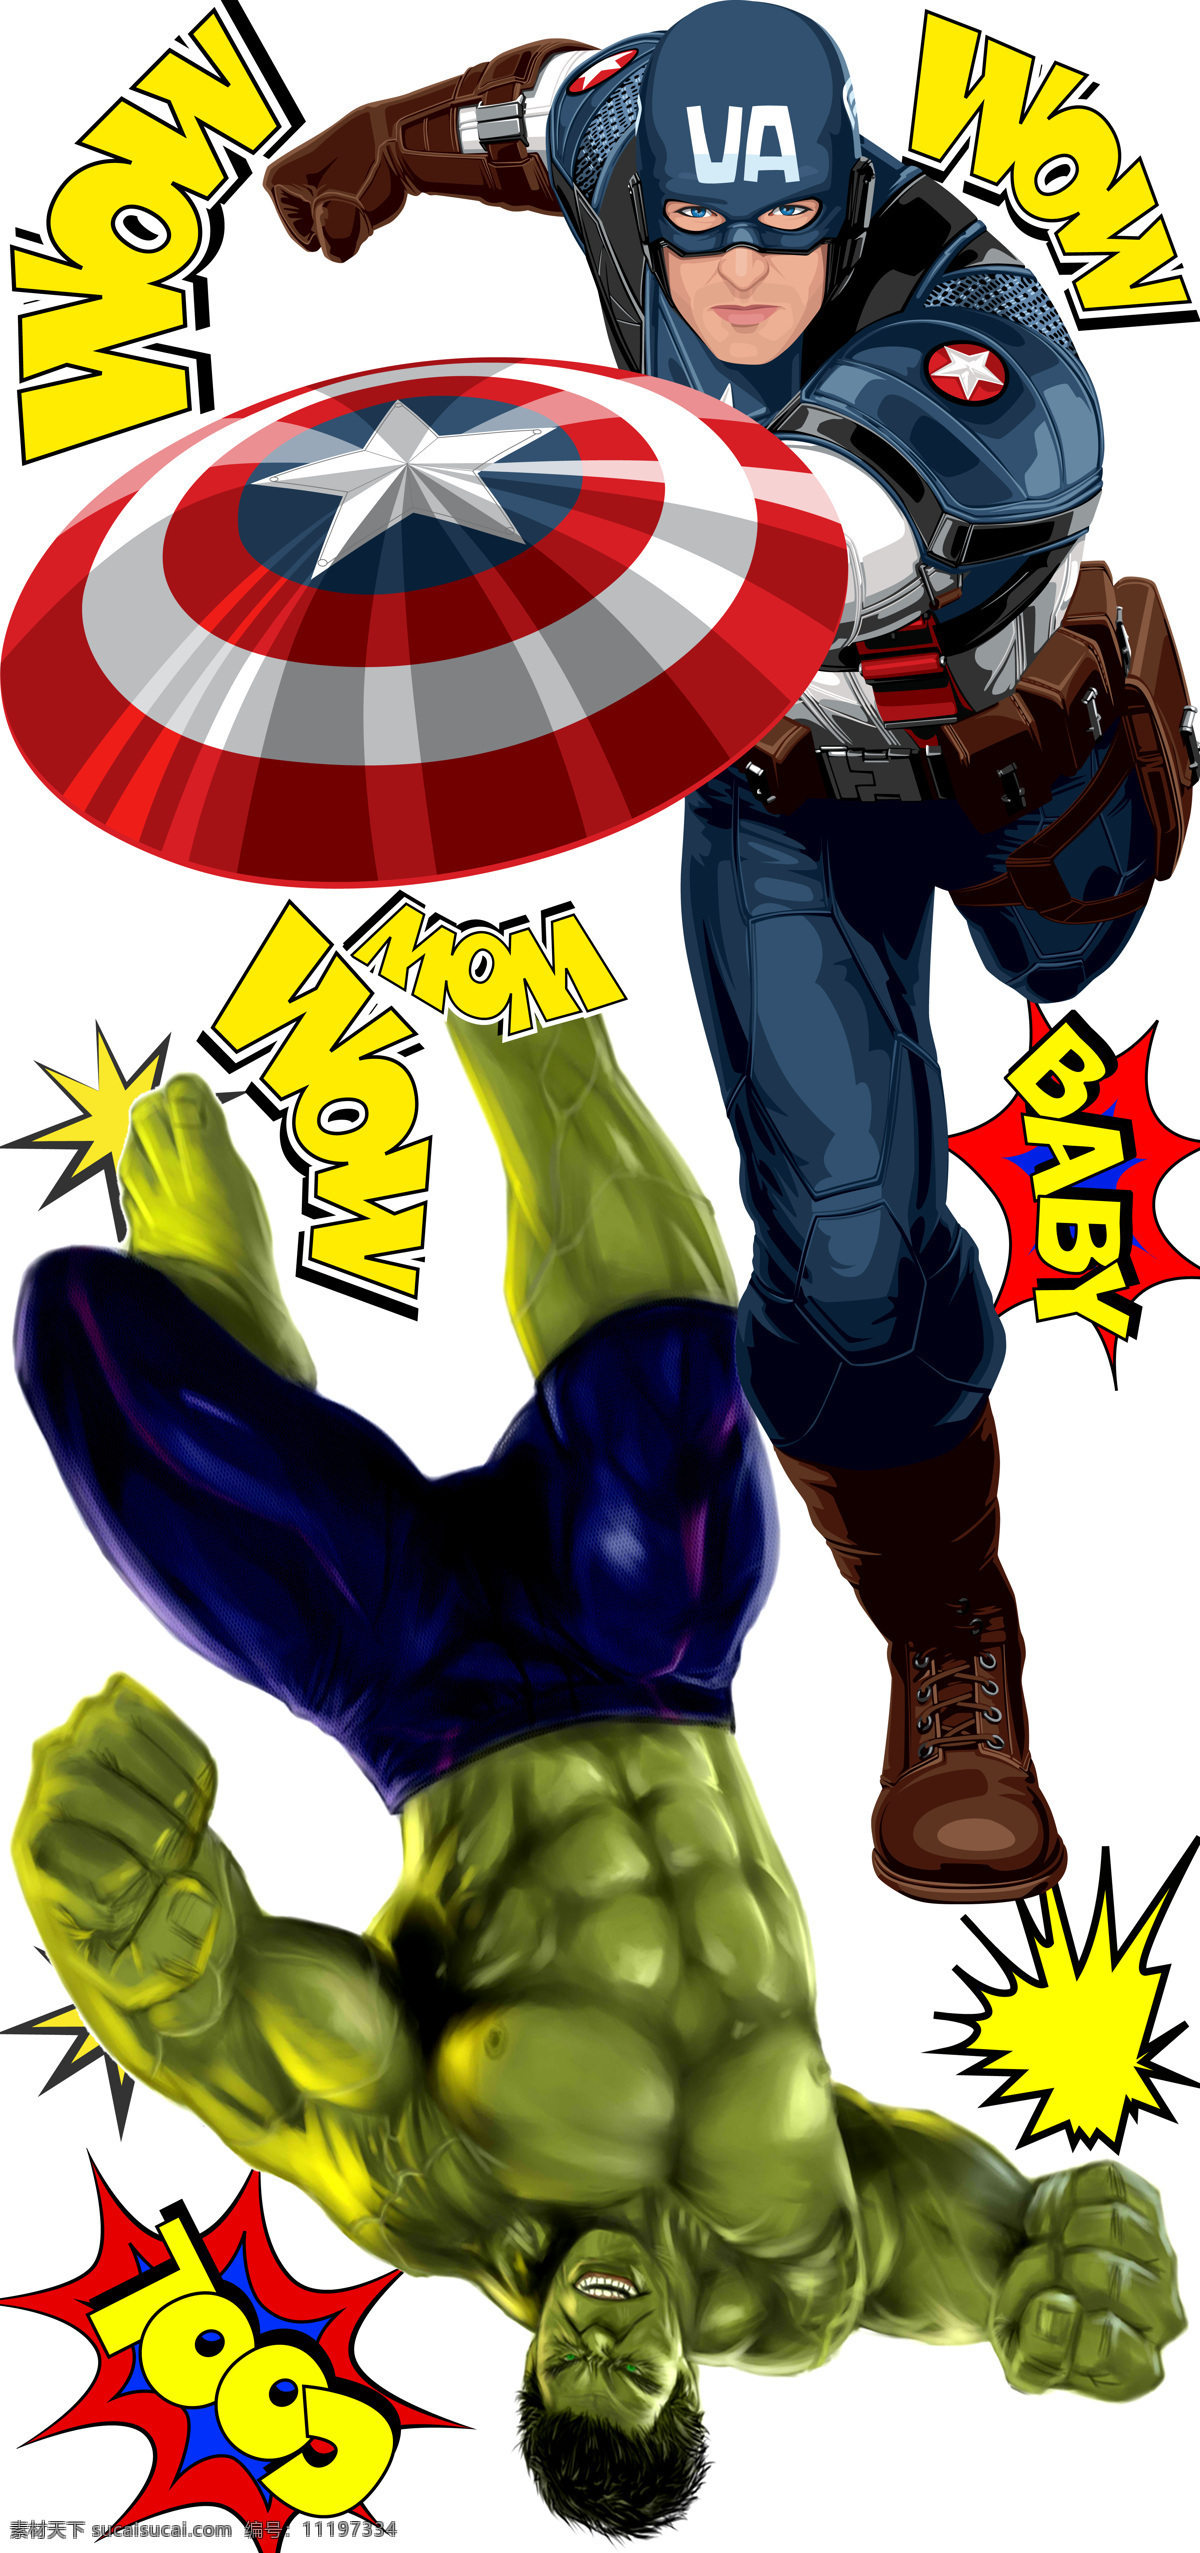 复仇者 联盟 美国队长 绿巨人 复仇者联盟 设计素材 超人 动漫动画